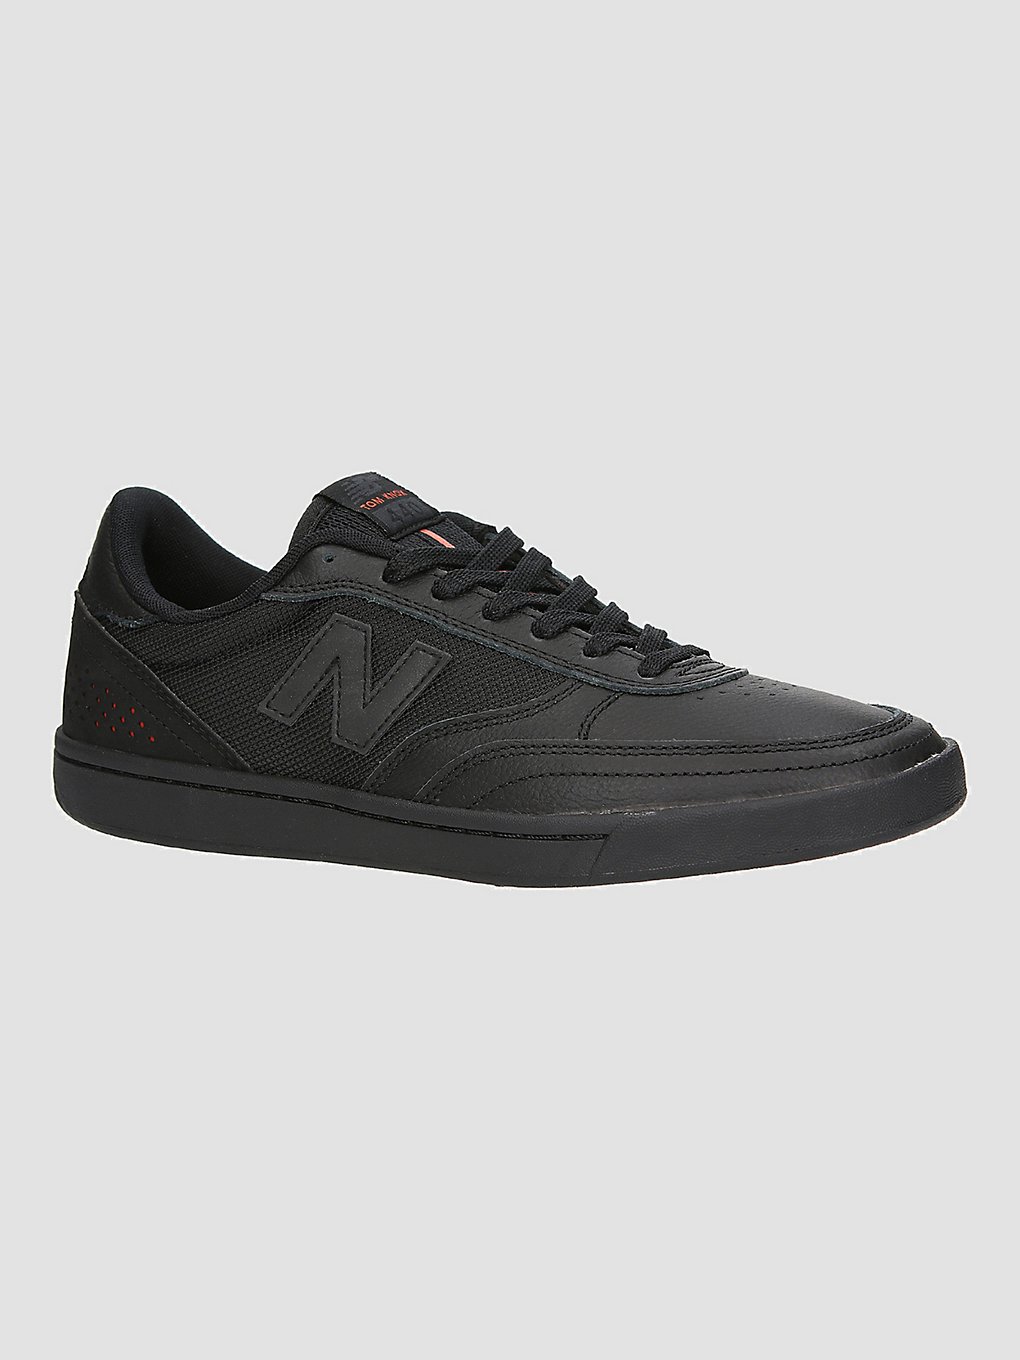 New Balance Numeric NM440 Tom Knox Skate Shoes svart